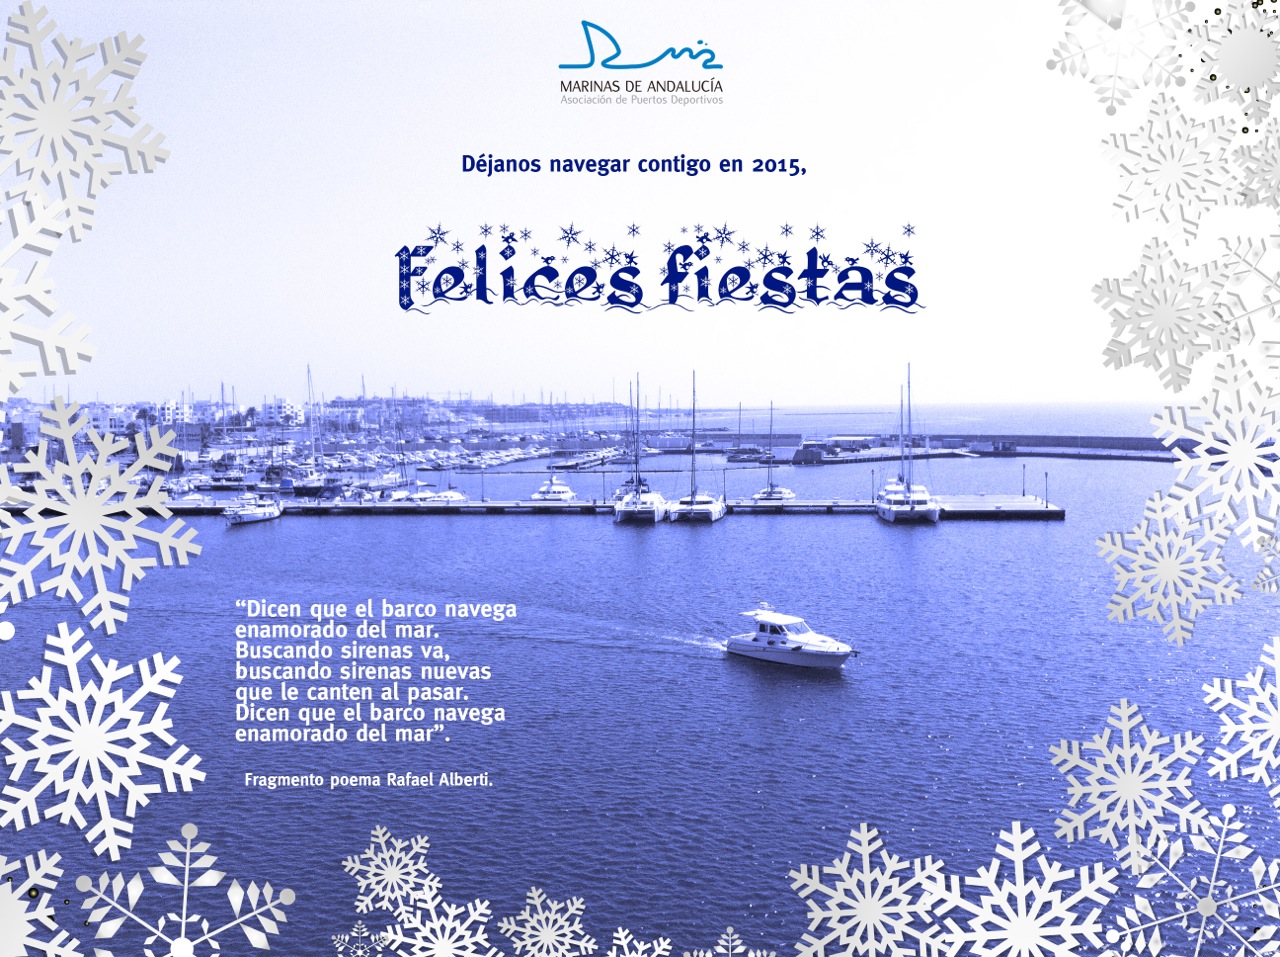 Seguir navegando juntos es el deseo de Marinas de Andalucía para 2015